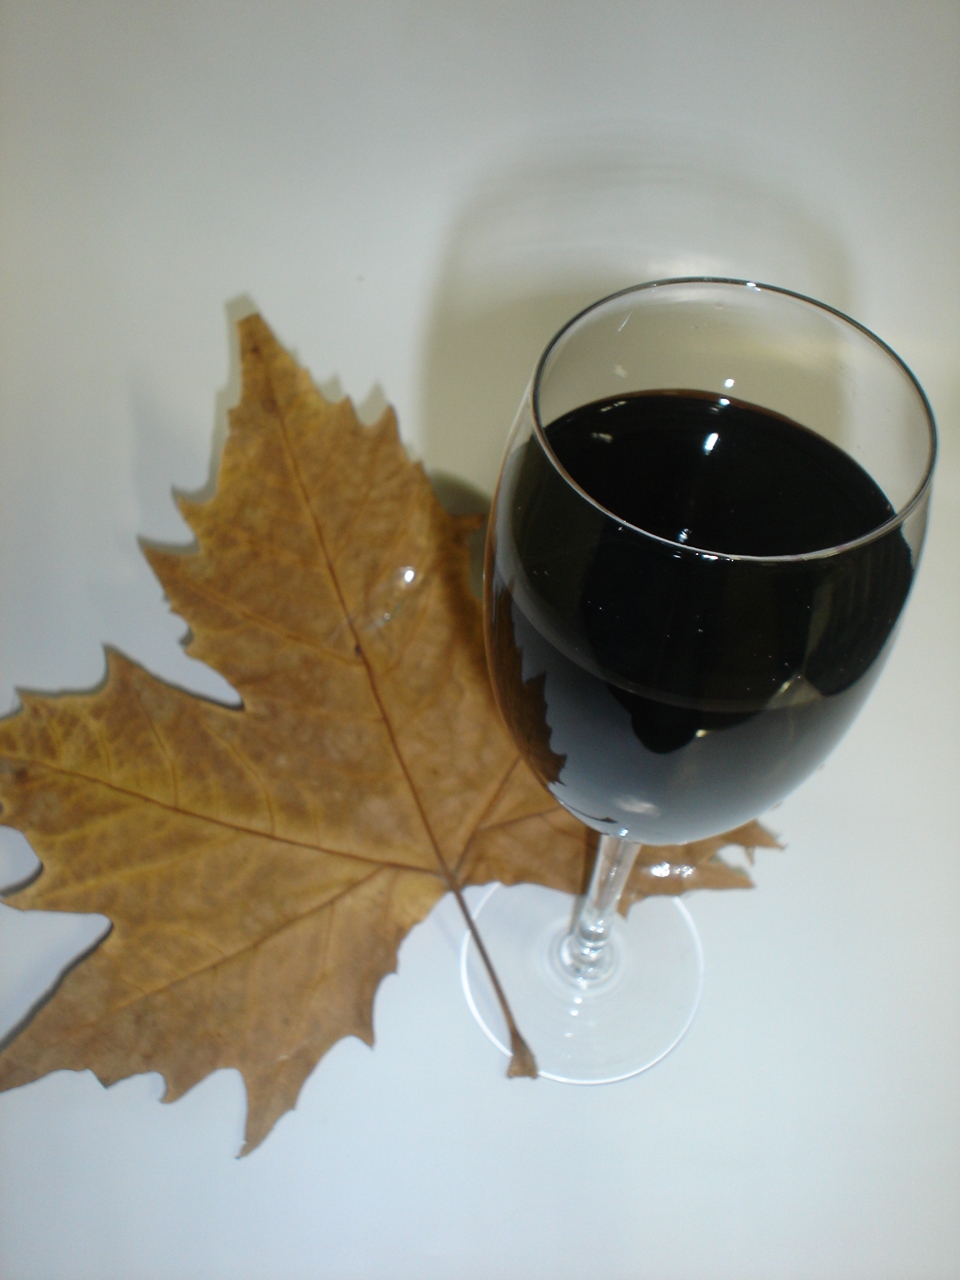 Programação une gastronomia ao vinho e baixas temperaturas. - Divulgação